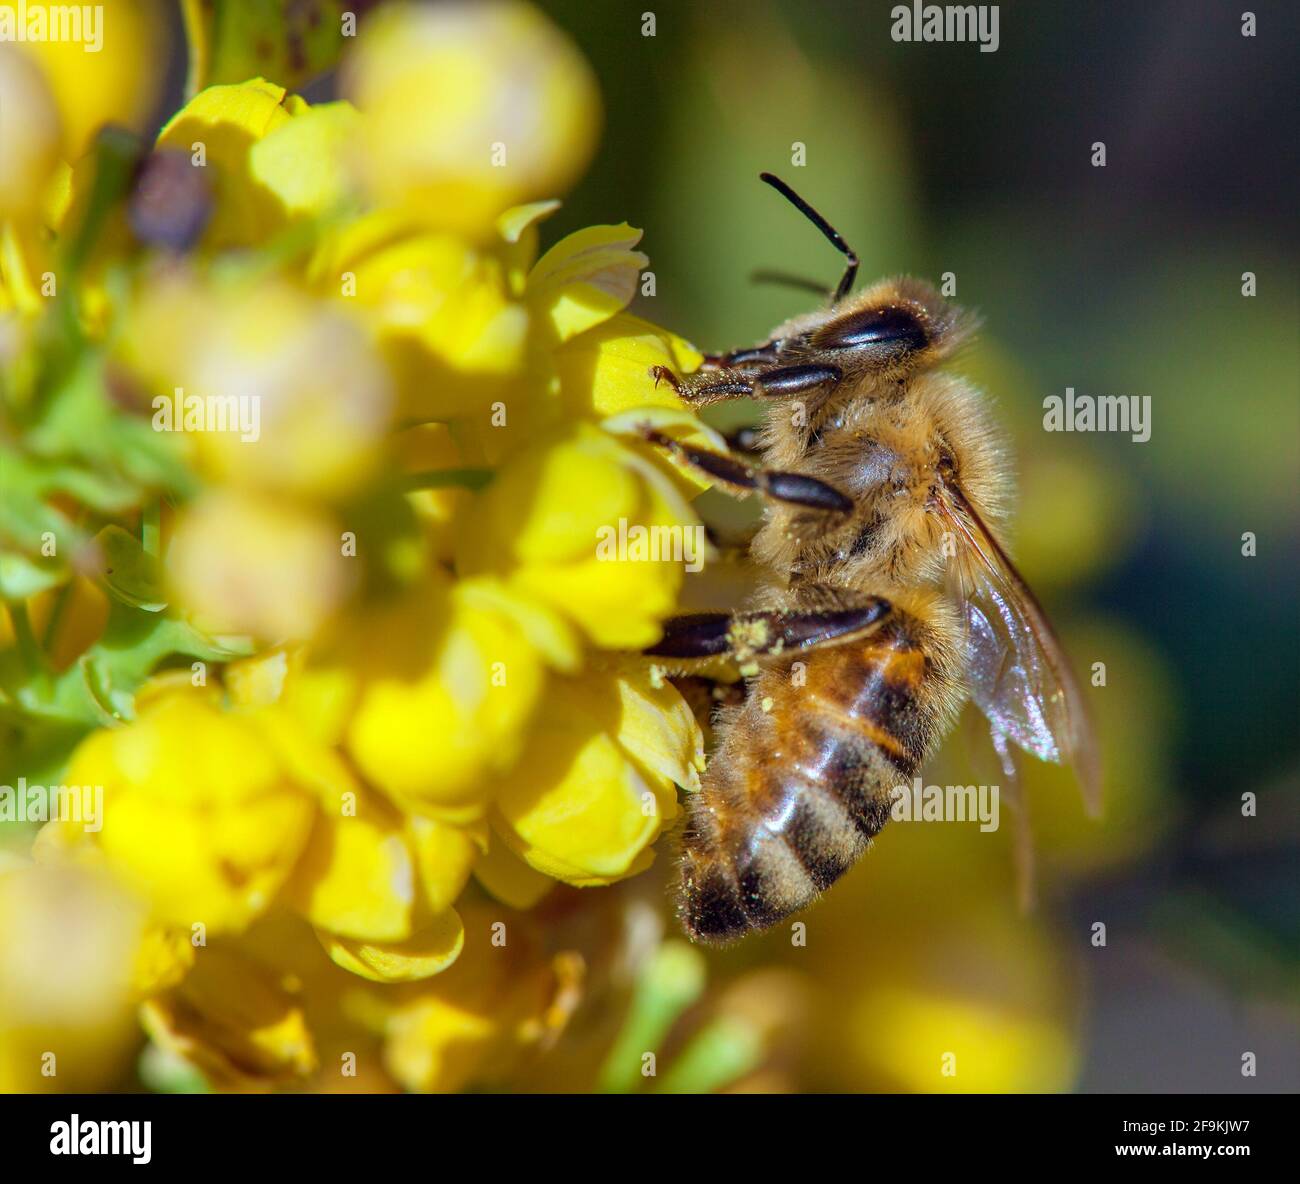 Détail de l'abeille ou de l'abeille en latin APIs mellifera, abeille européenne ou occidentale assise sur la fleur jaune Banque D'Images